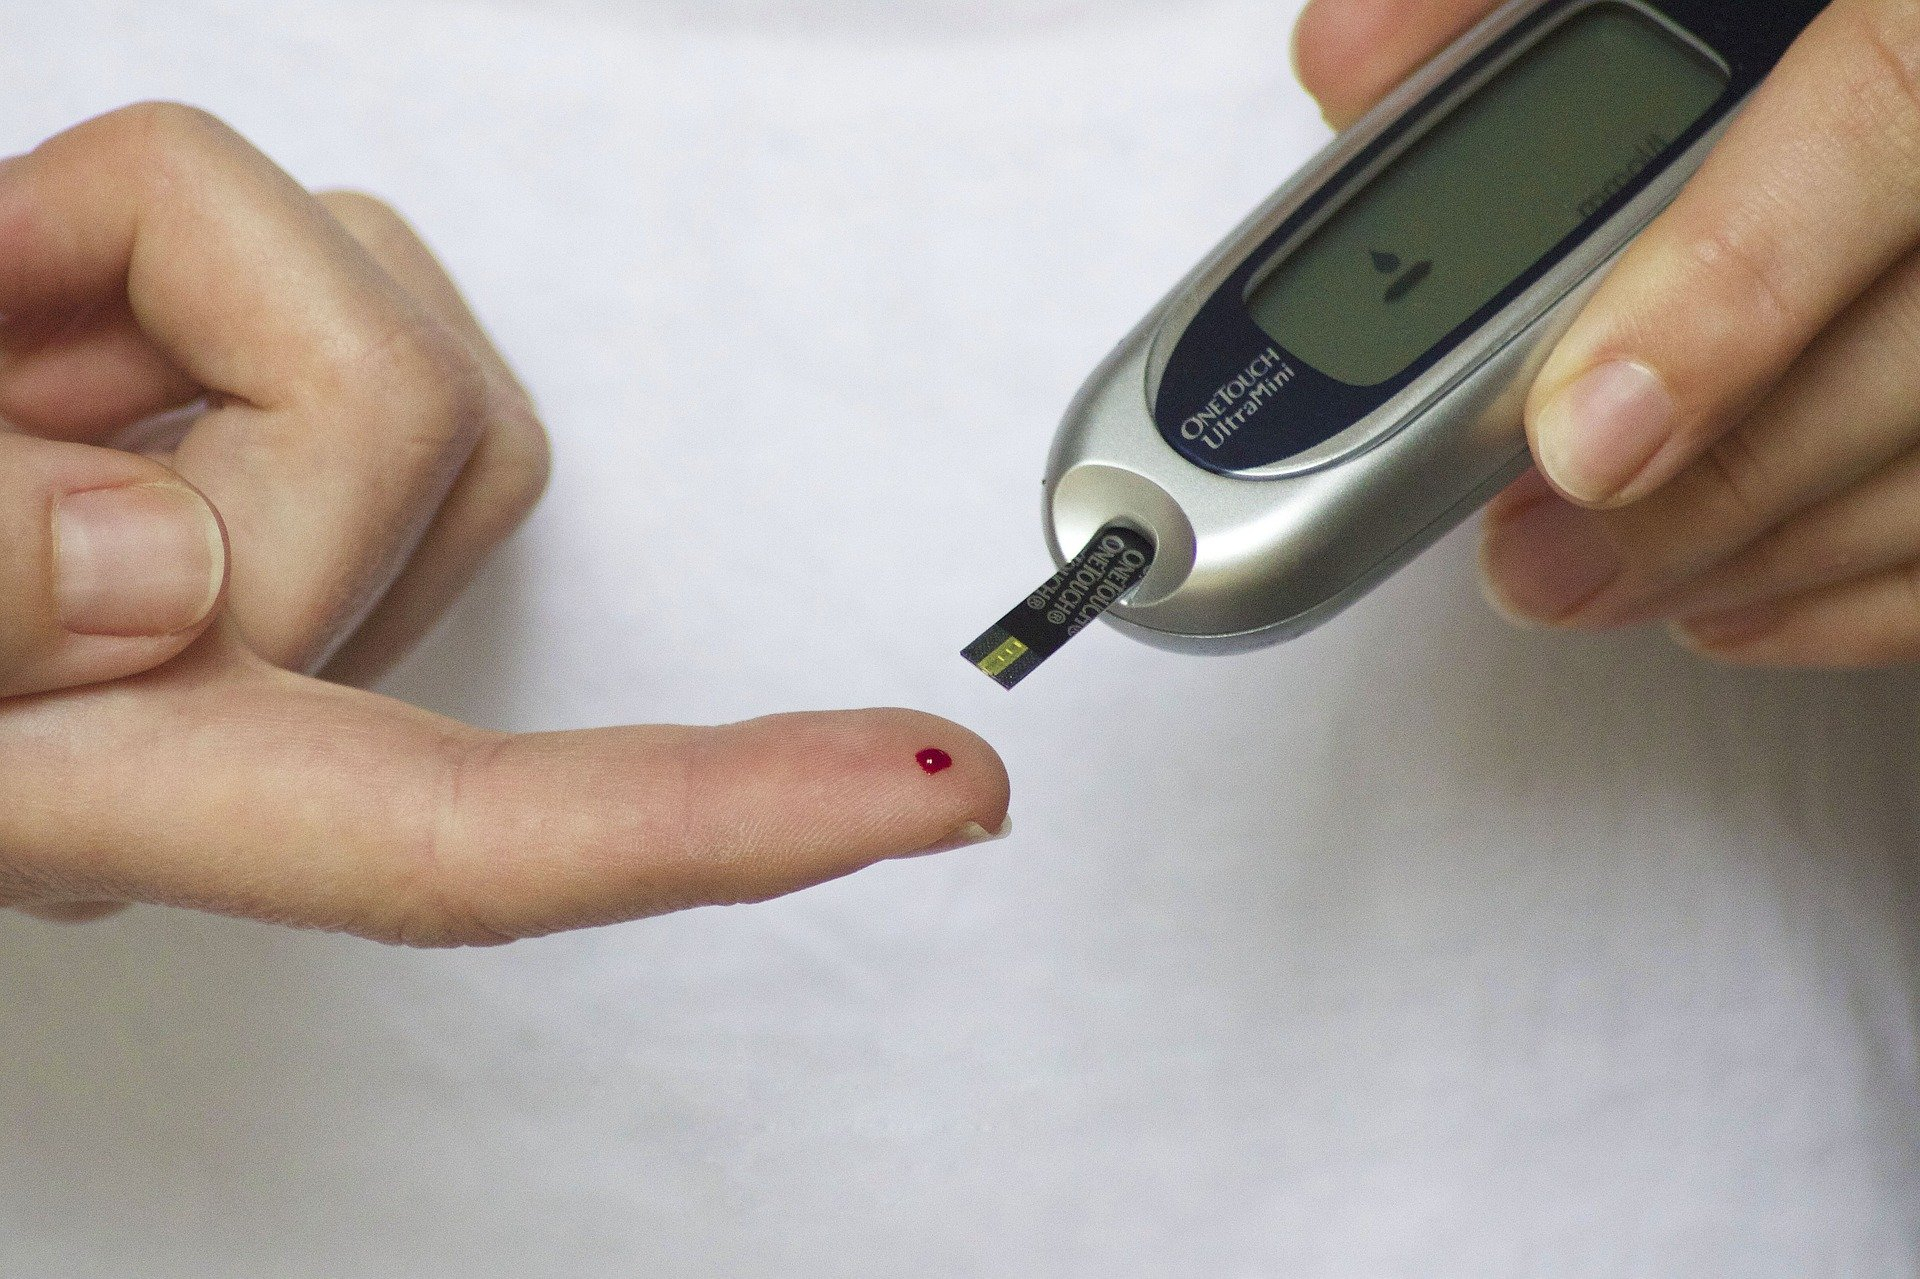 Чем опасен сахарный диабет? О принципах профилактики и основах лечения рассказывают эксперты ВТБ МС